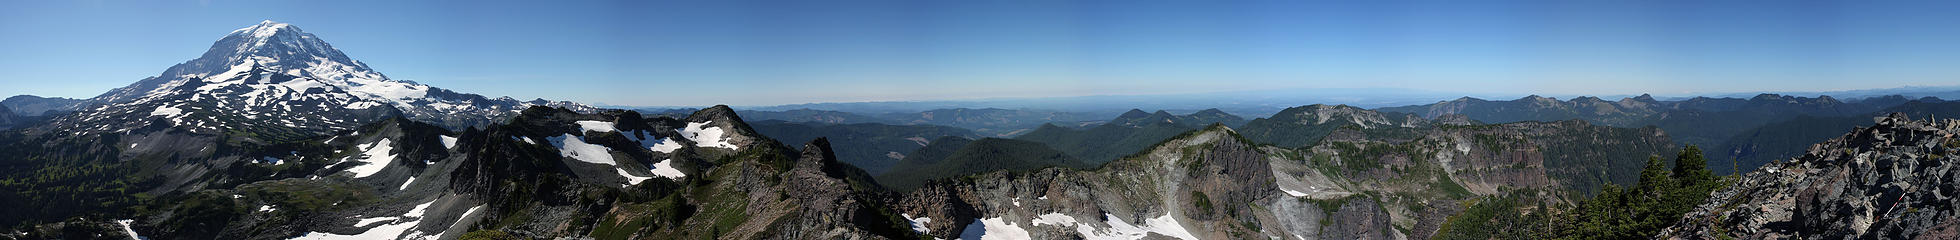 Mother Mountain panorama